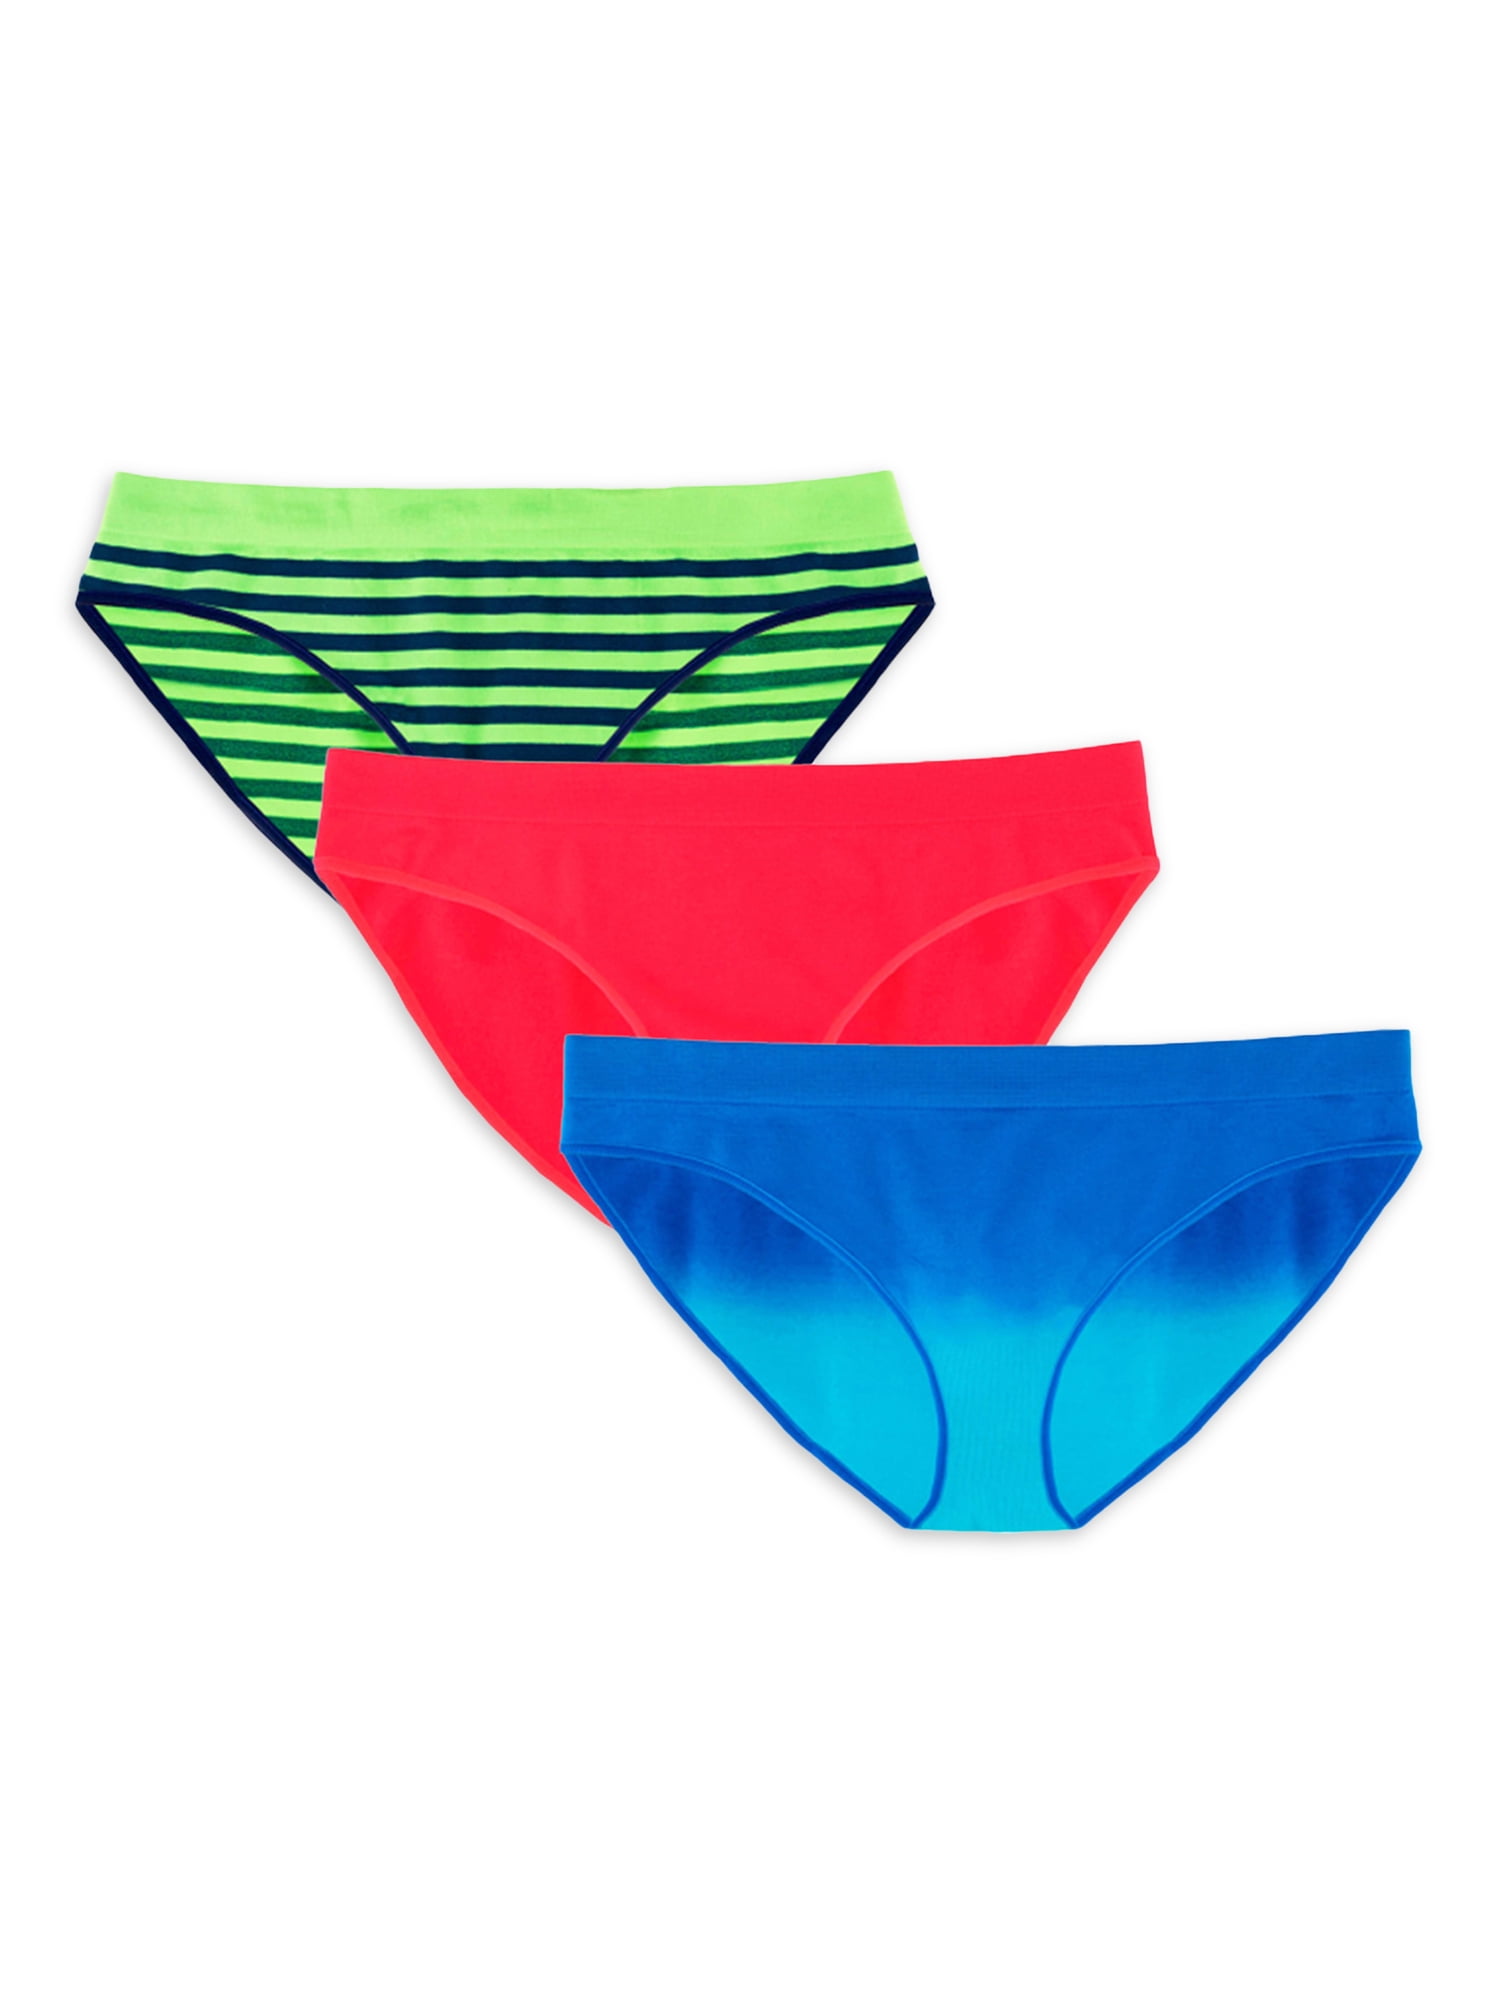 Undies.com Solid Printed Tie Dye Everyday Bikini Panty (Women's) 3 Pack 